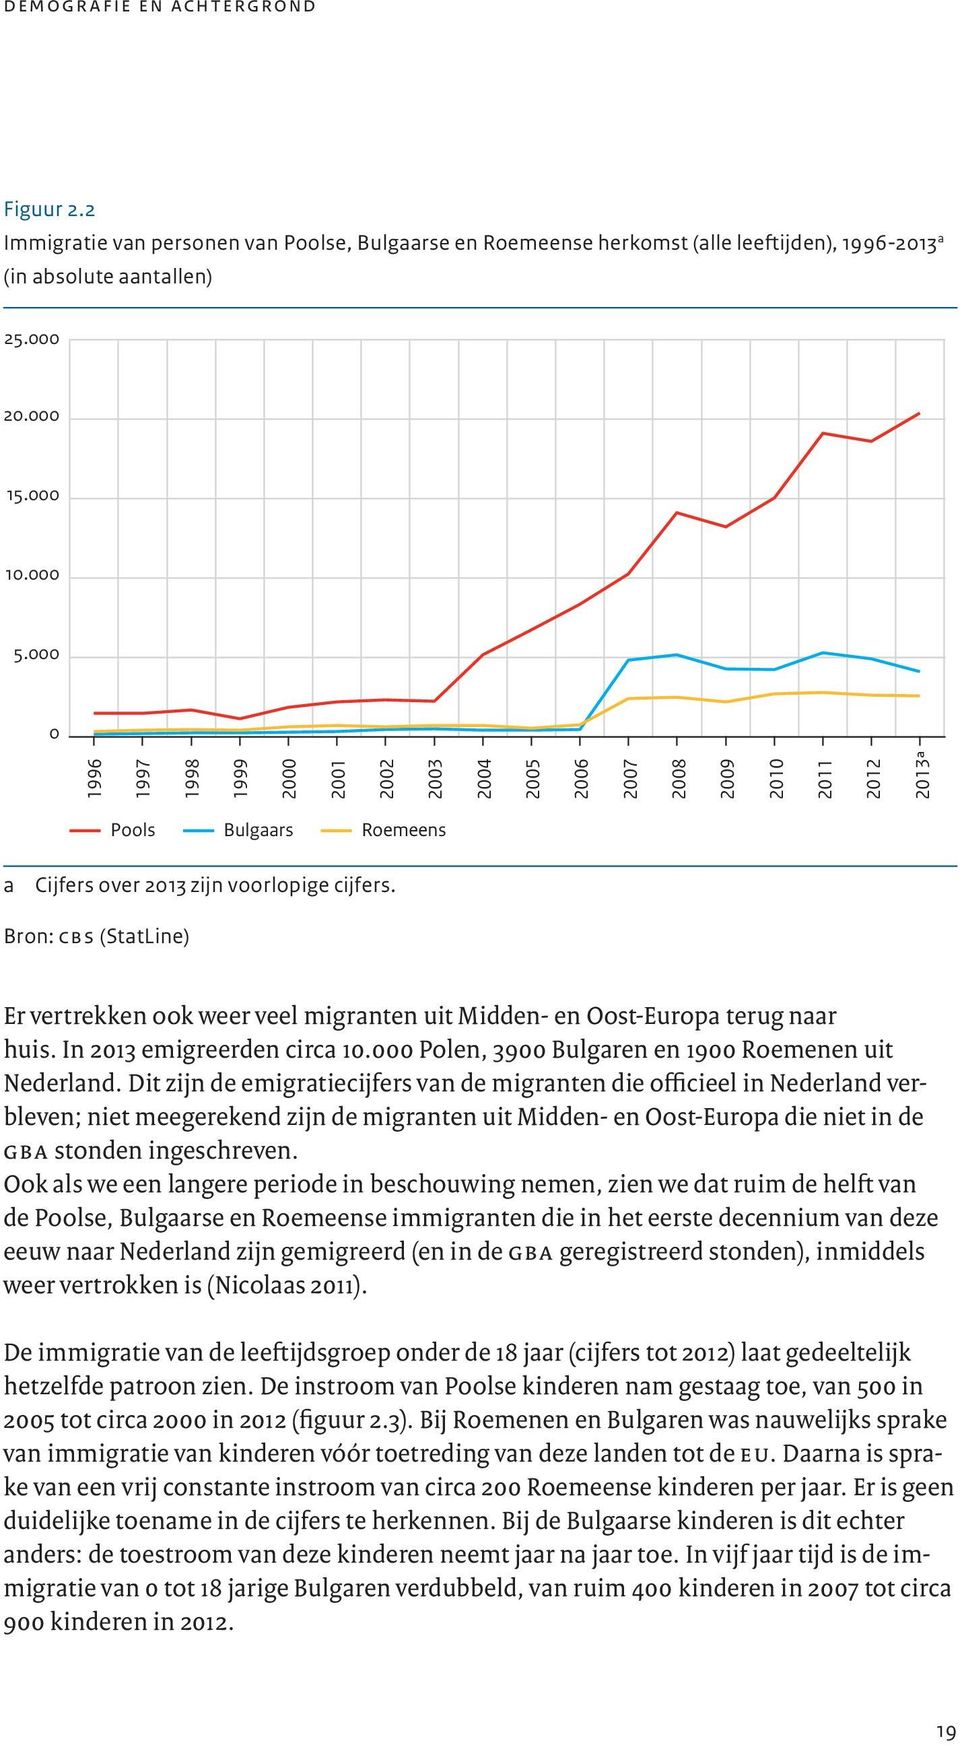 Bron: cbs (StatLine) Er vertrekken ook weer veel migranten uit Midden- en Oost-Europa terug naar huis. In 2013 emigreerden circa 10.000 Polen, 3900 Bulgaren en 1900 Roemenen uit Nederland.